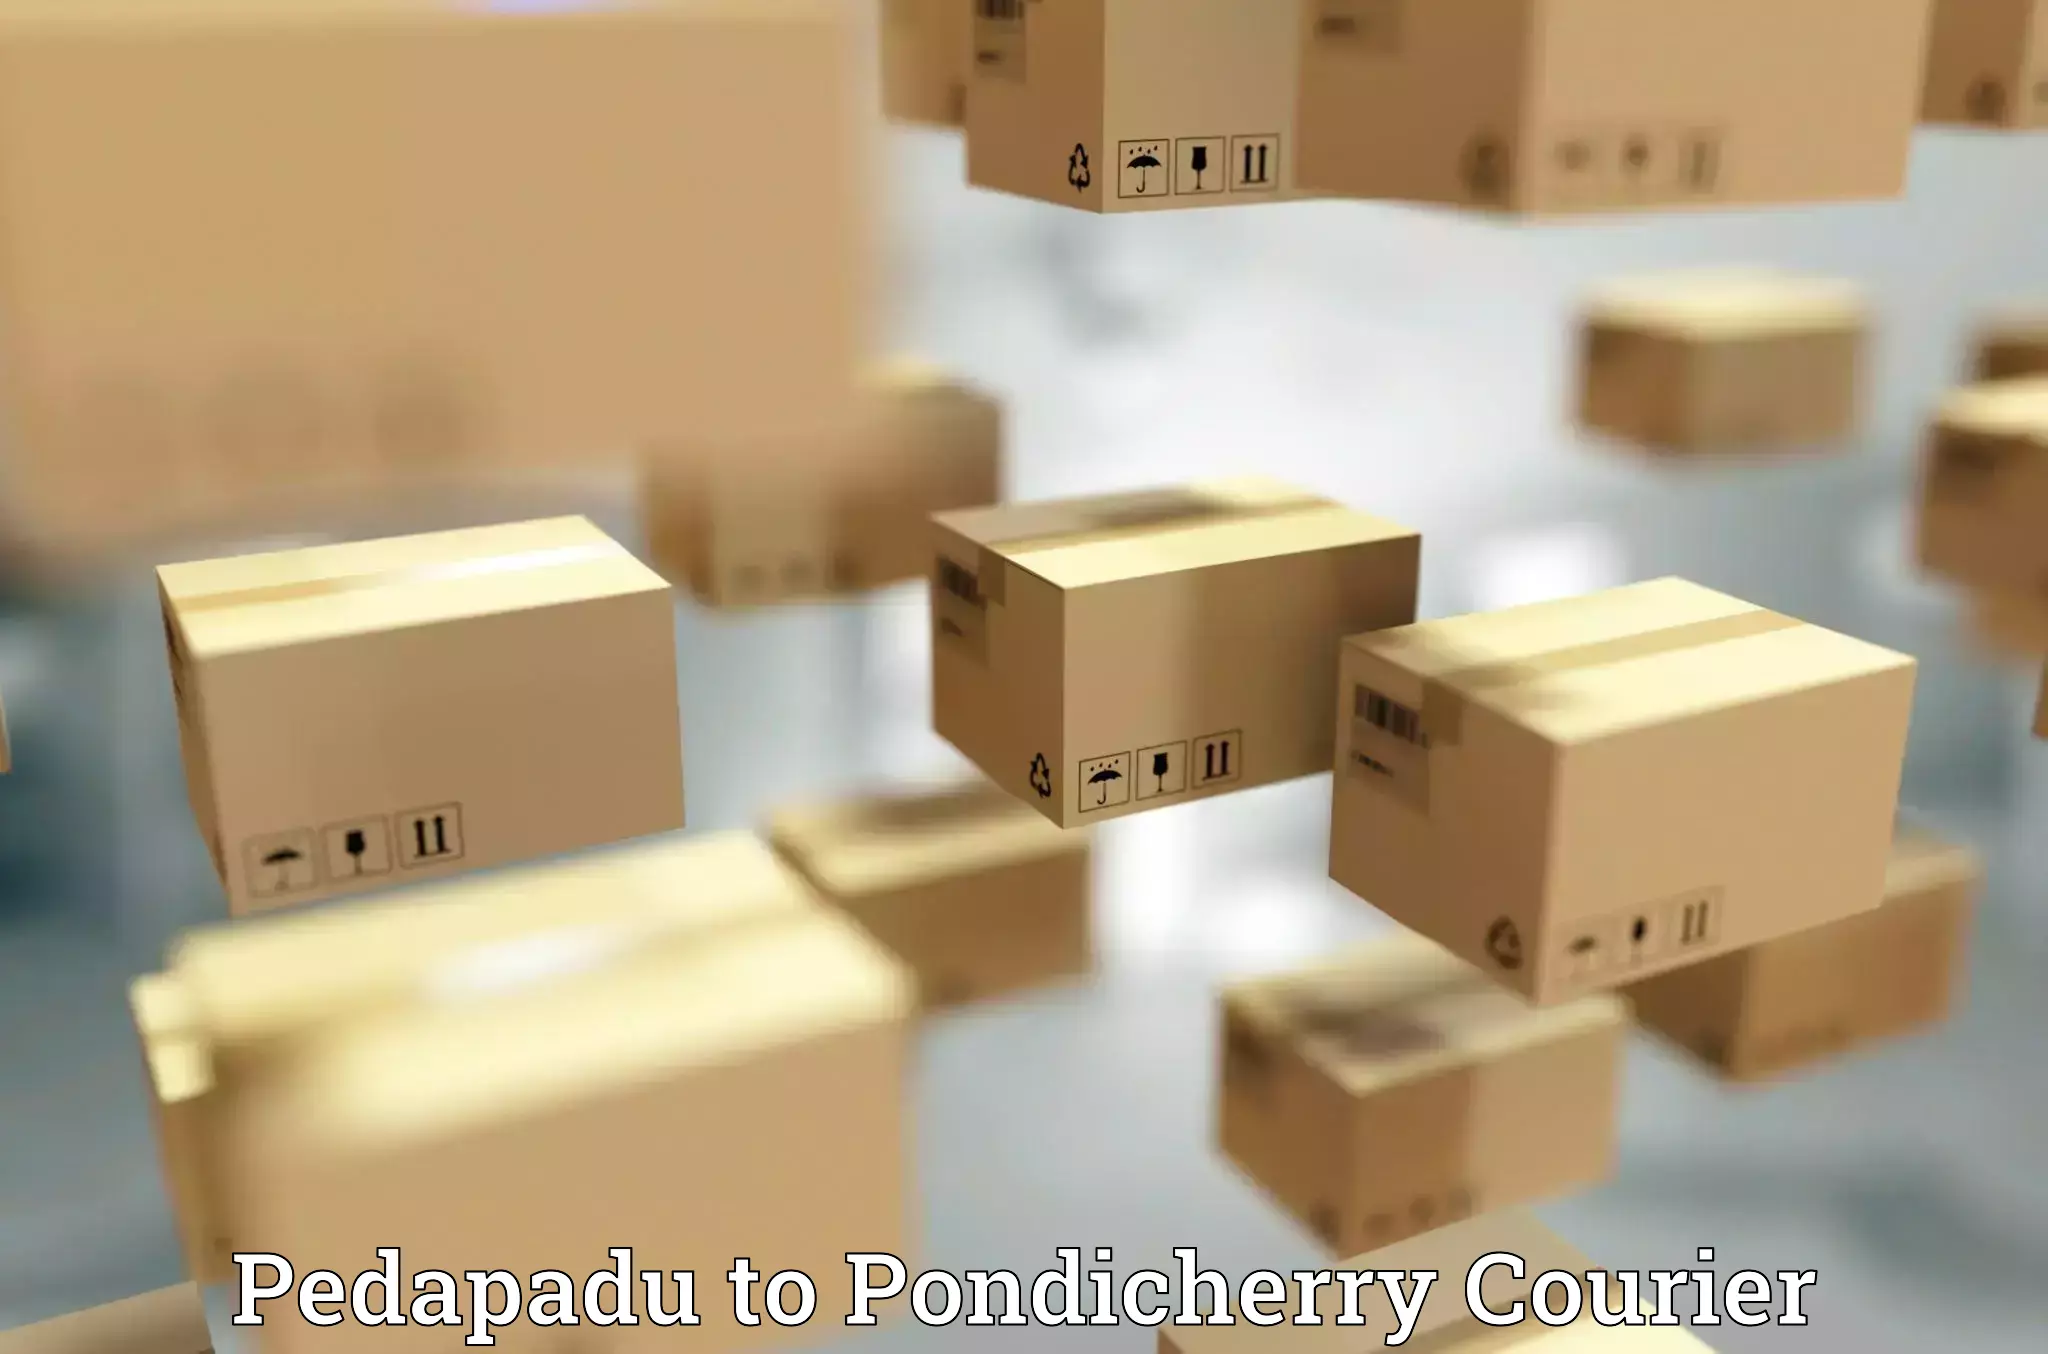 Courier app Pedapadu to Pondicherry